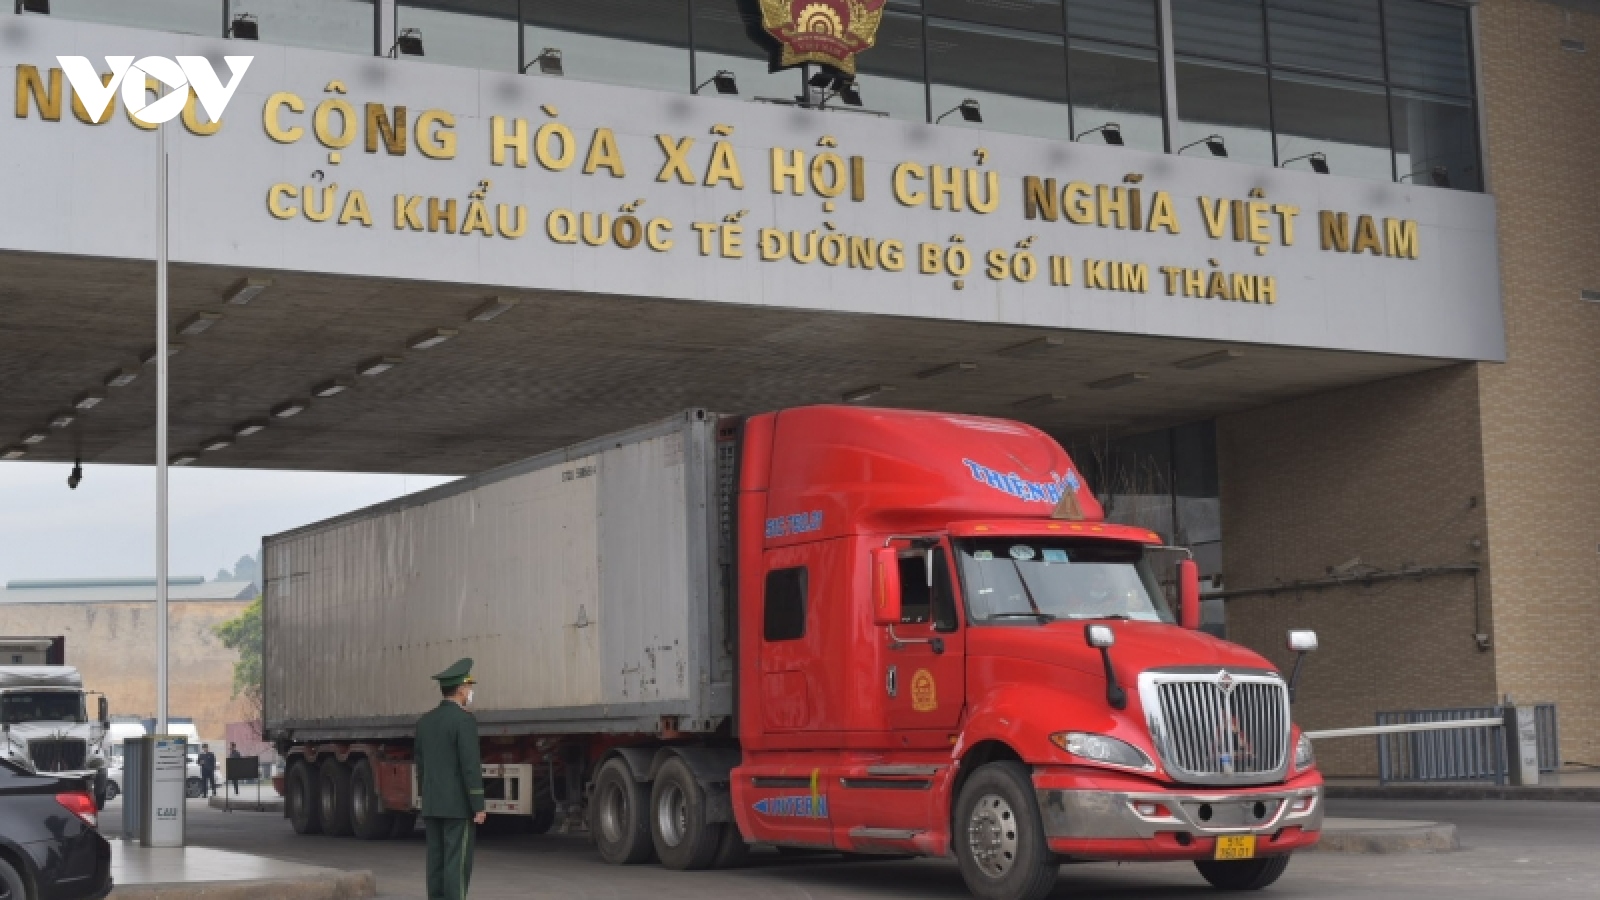 Hàng hóa nhộn nhịp qua cửa khẩu Lào Cai ngày đầu năm mới